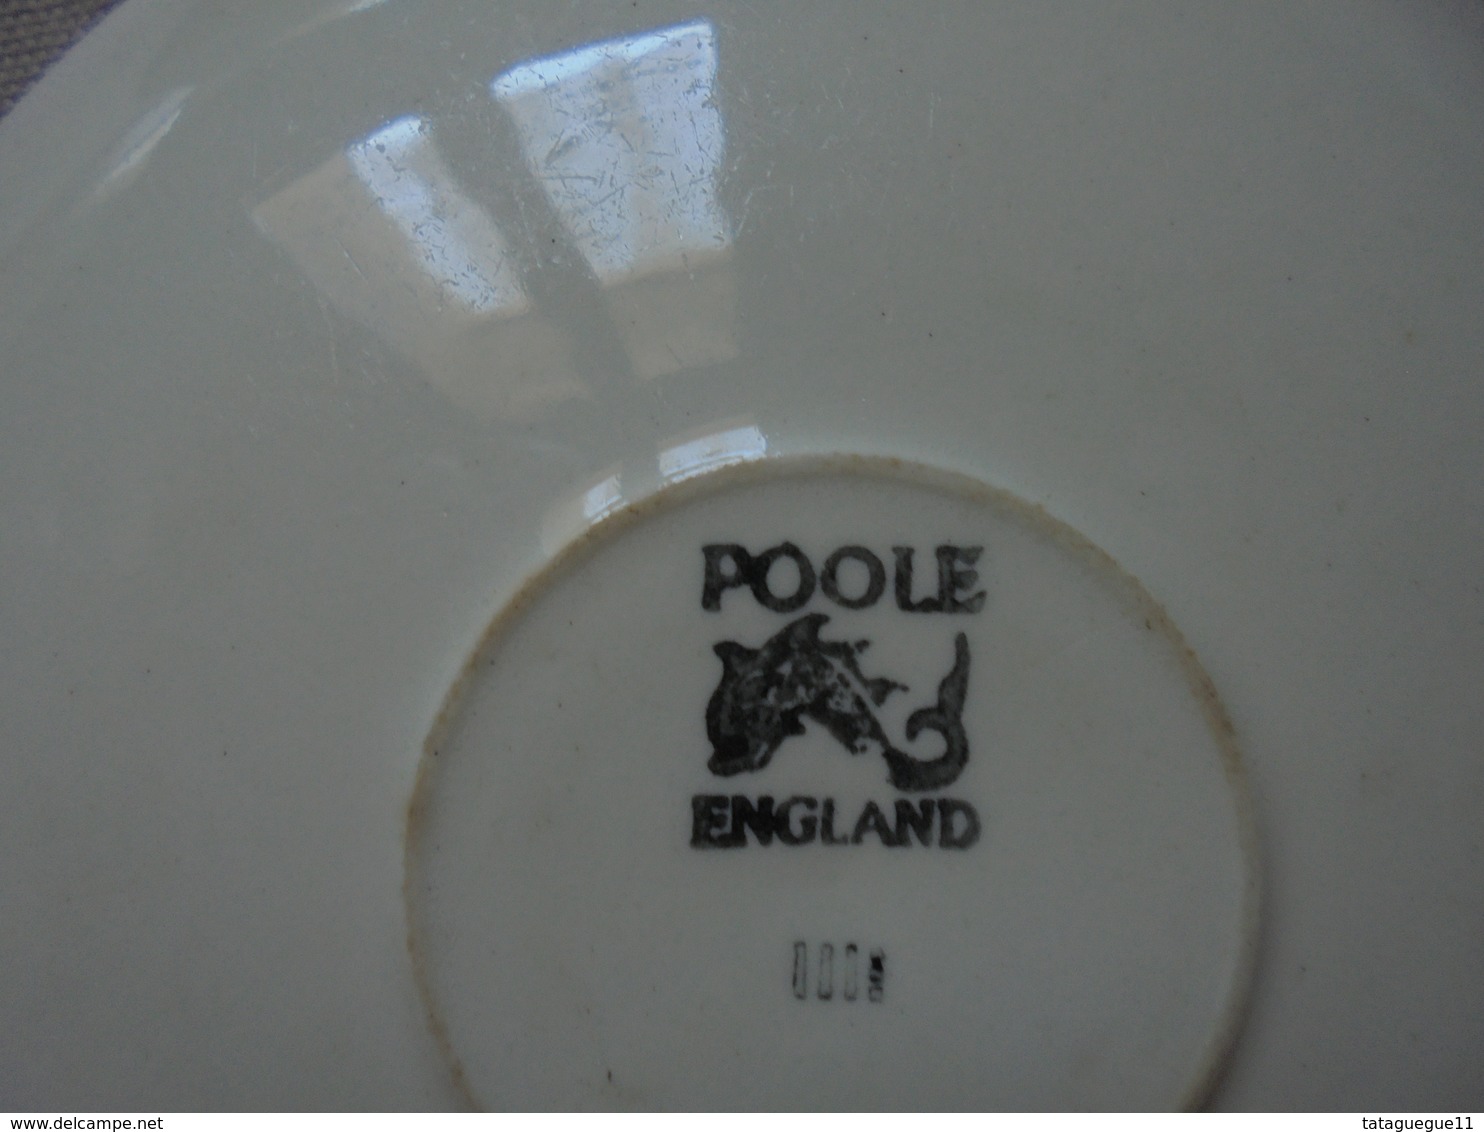 Ancien - Reste de service à Café/Thé + Pot à lait Couleur vert POOLE Made in England